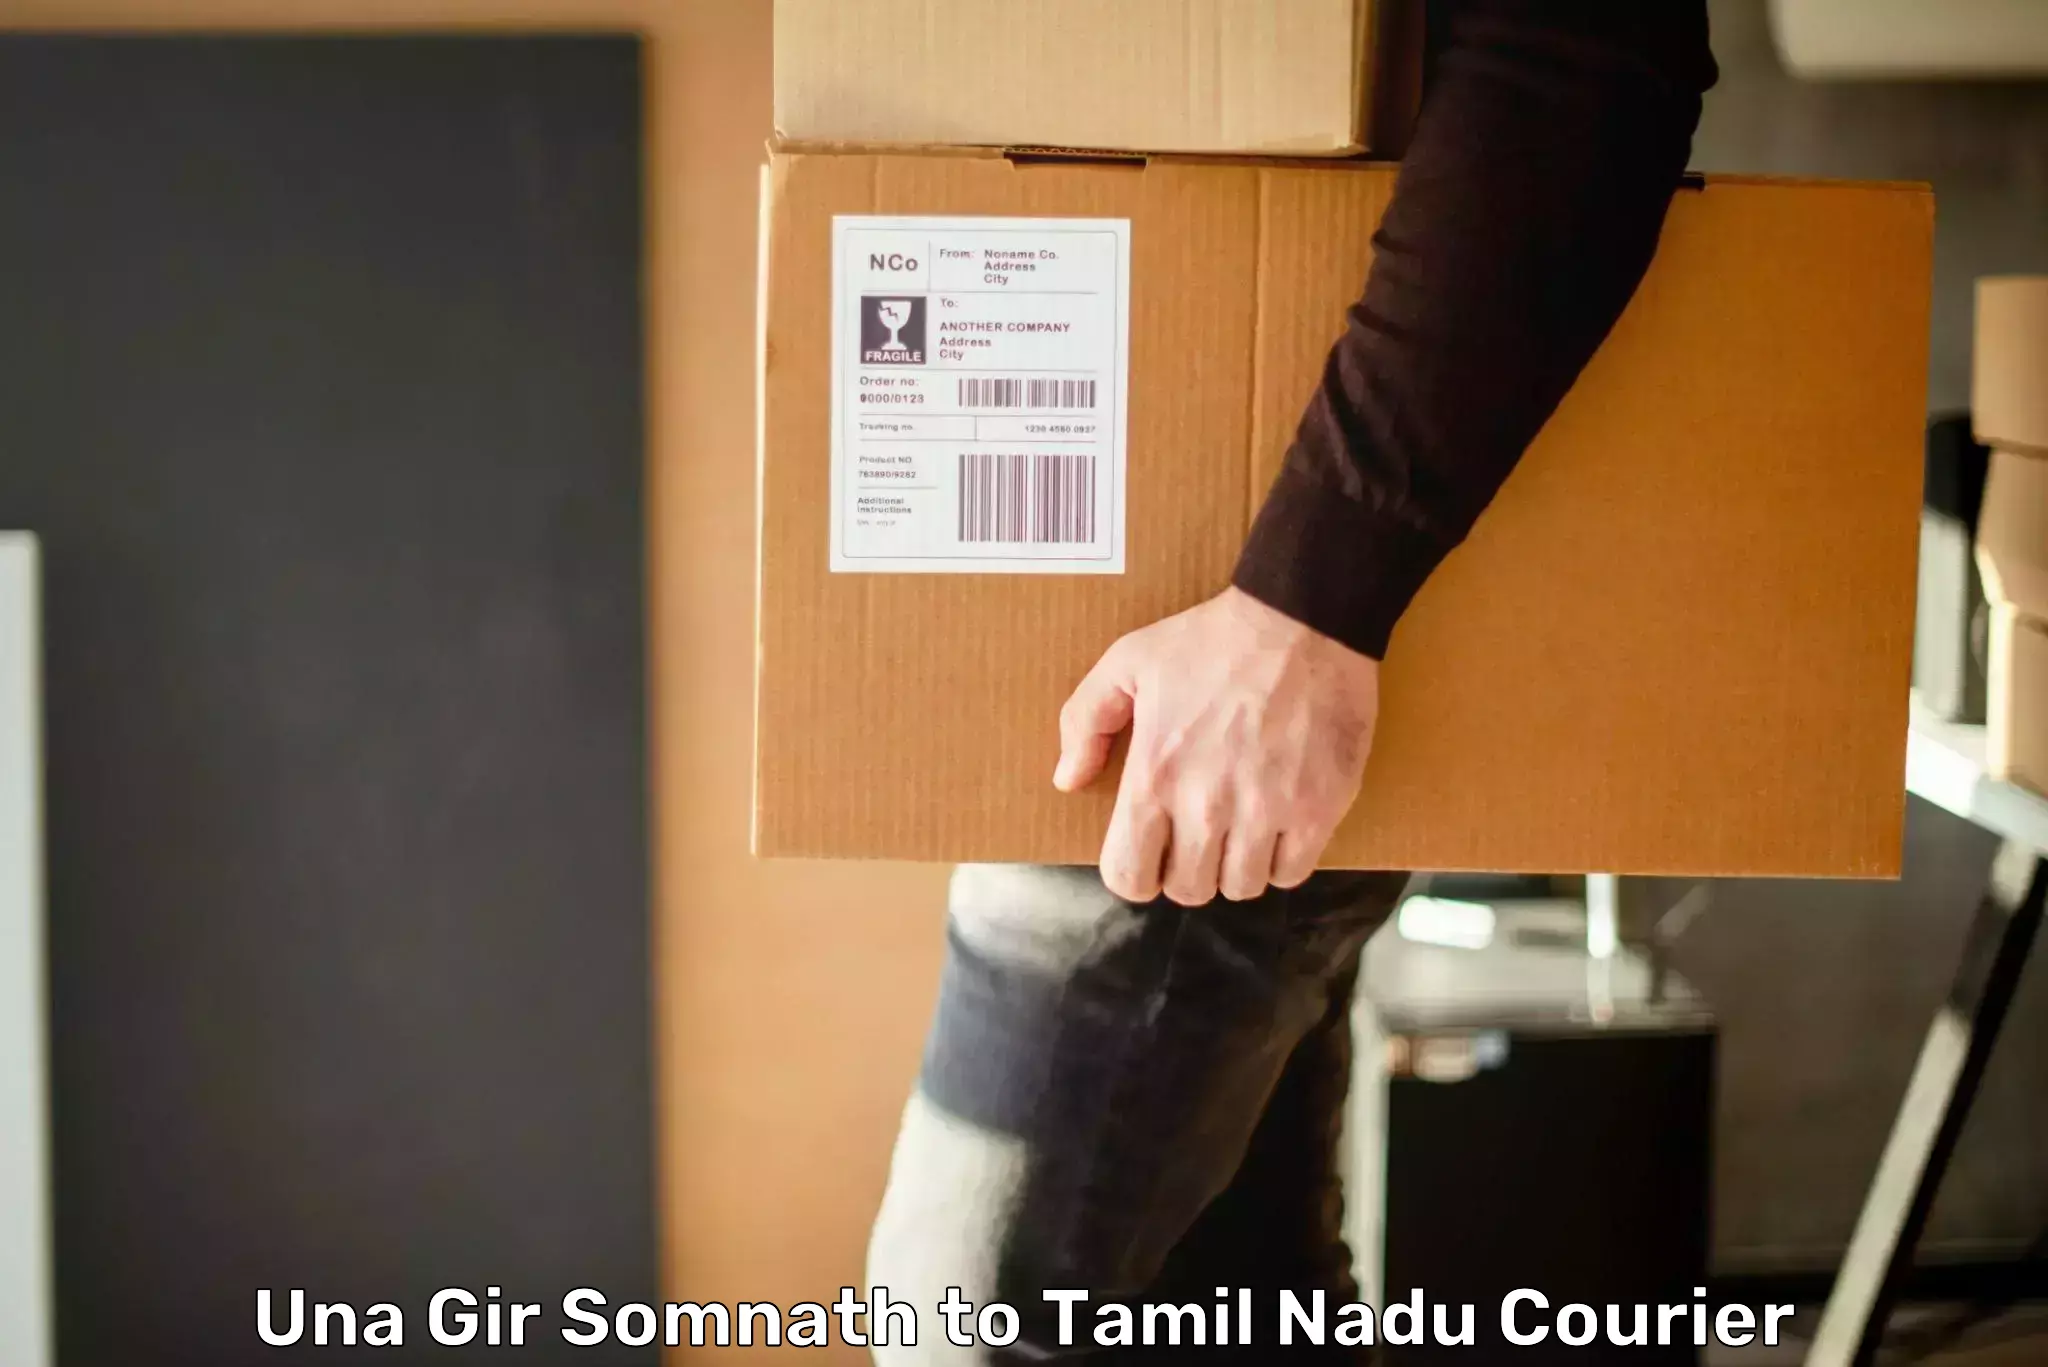 Courier app Una Gir Somnath to Maharajapuram